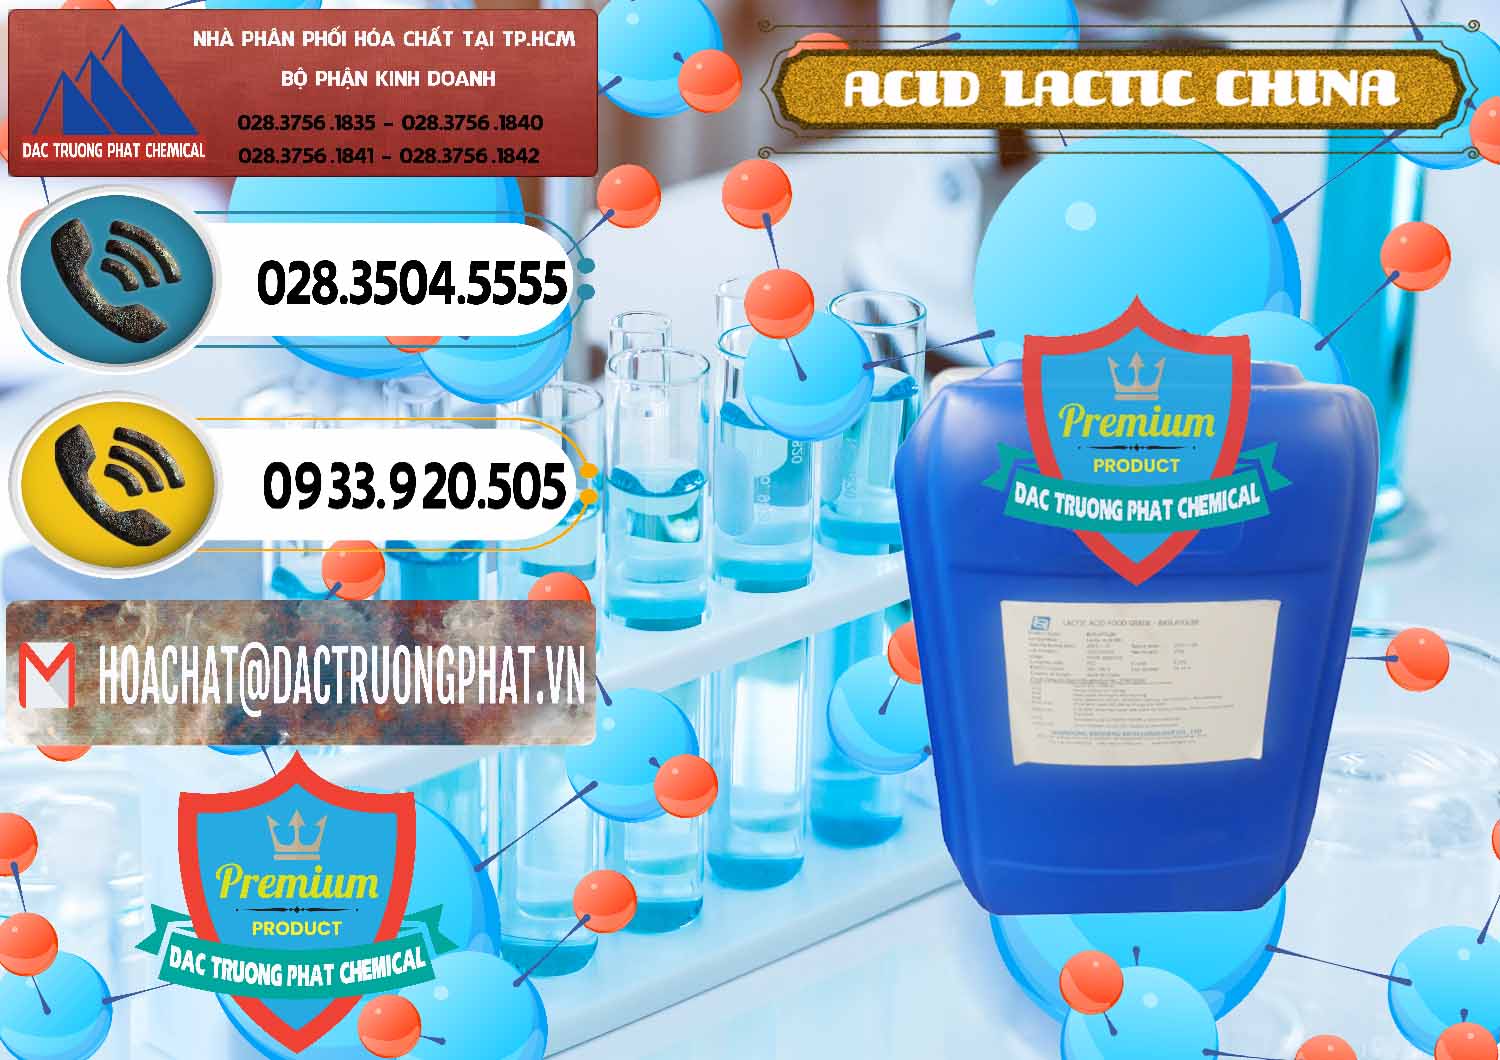 Cty chuyên cung cấp _ bán Acid Lactic – Axit Lactic Trung Quốc China - 0374 - Cty phân phối & cung cấp hóa chất tại TP.HCM - hoachatdetnhuom.vn